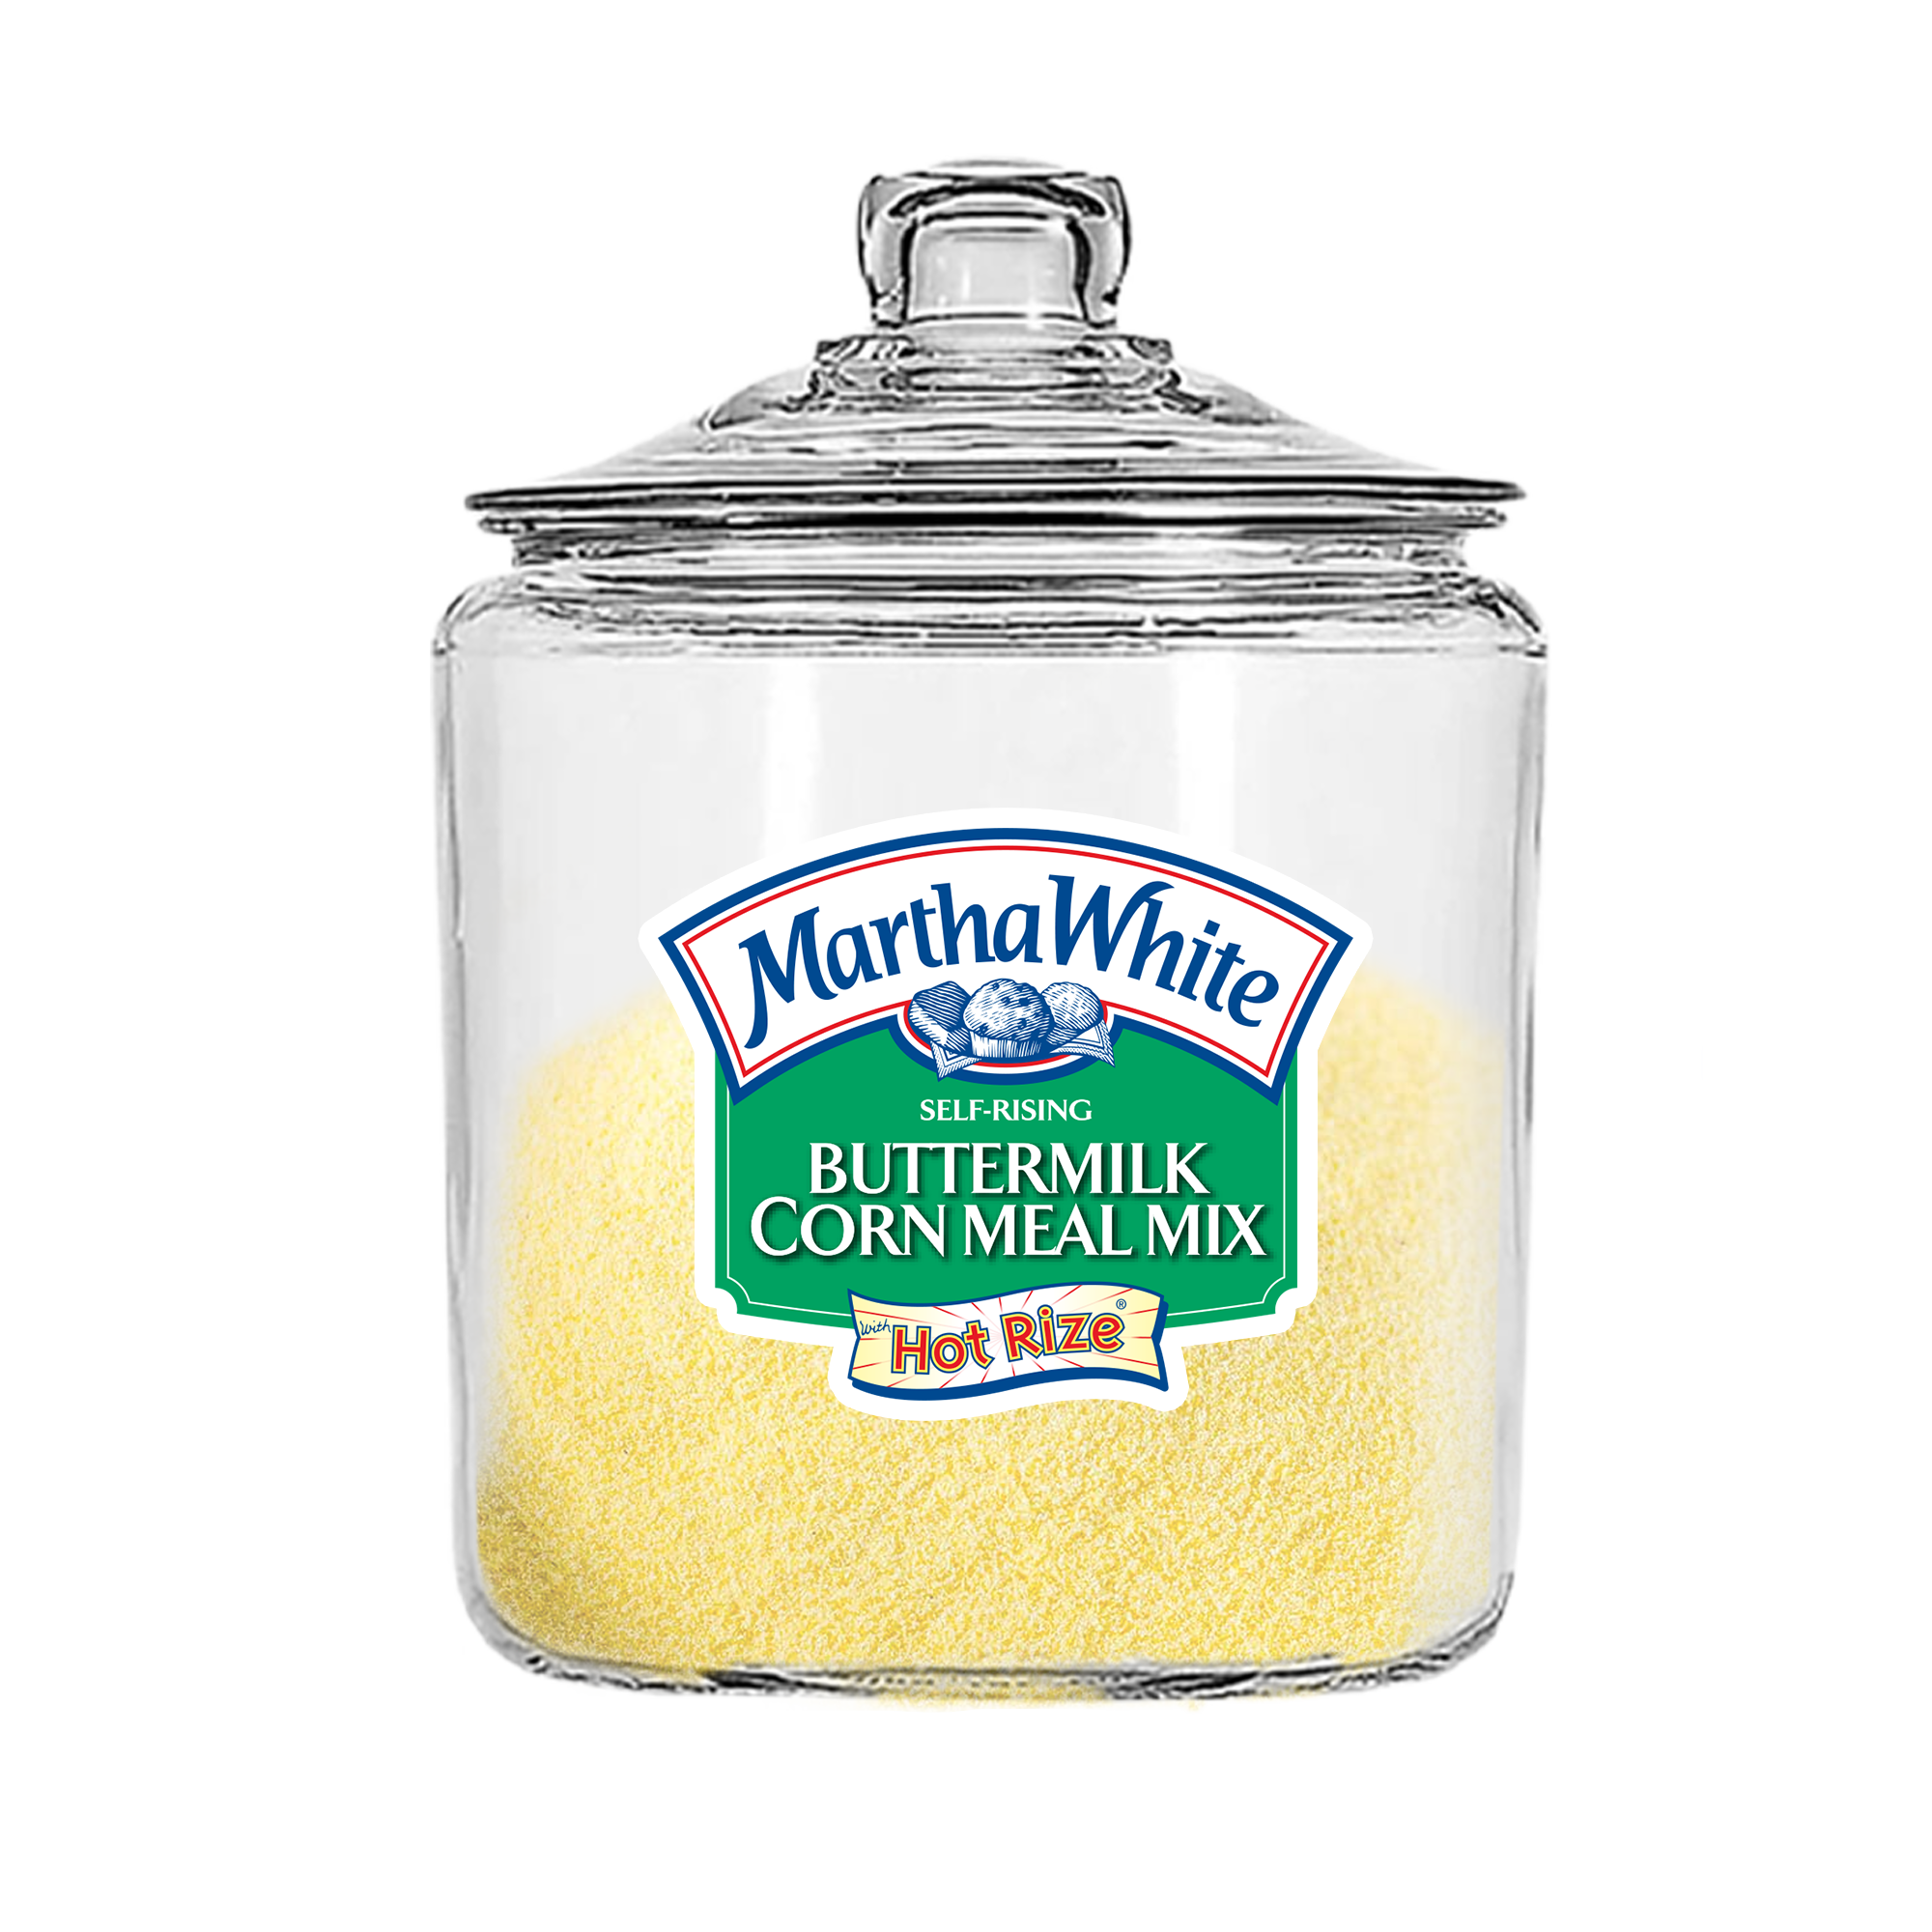 Buttermilk Corn Meal Mix Sticker